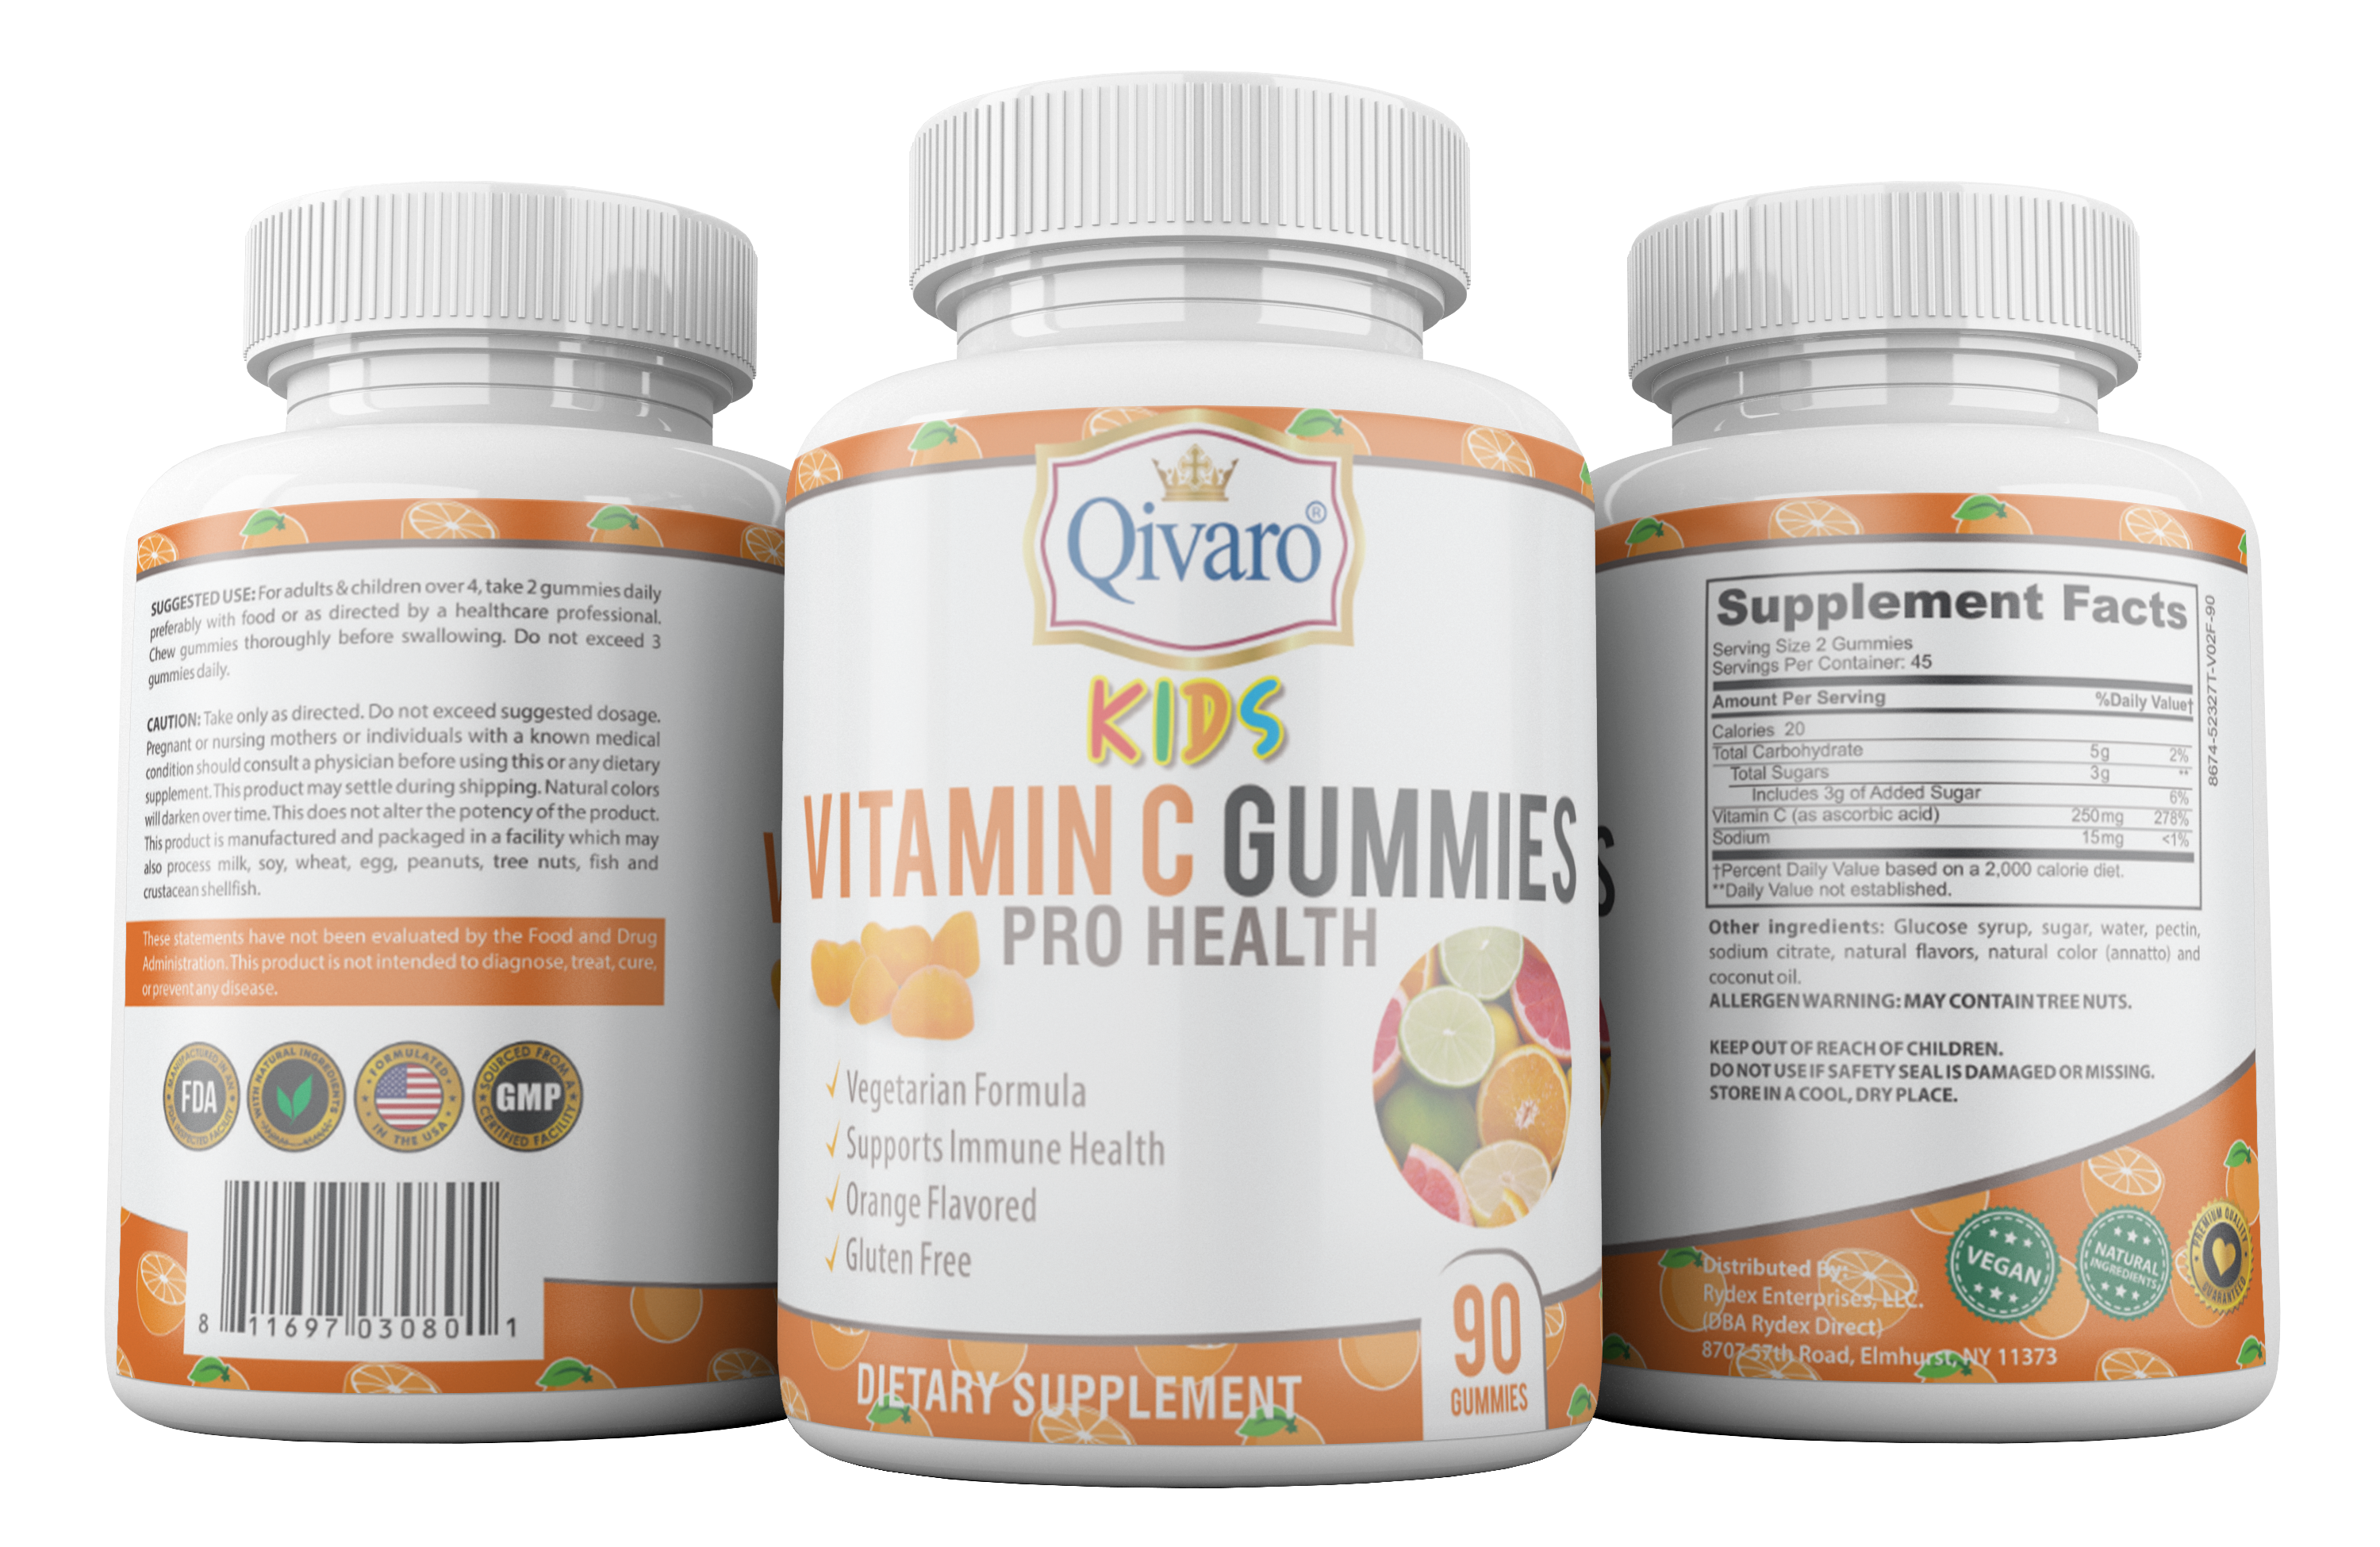 QKG04: Kids Vitamin C Gummies Pro Health